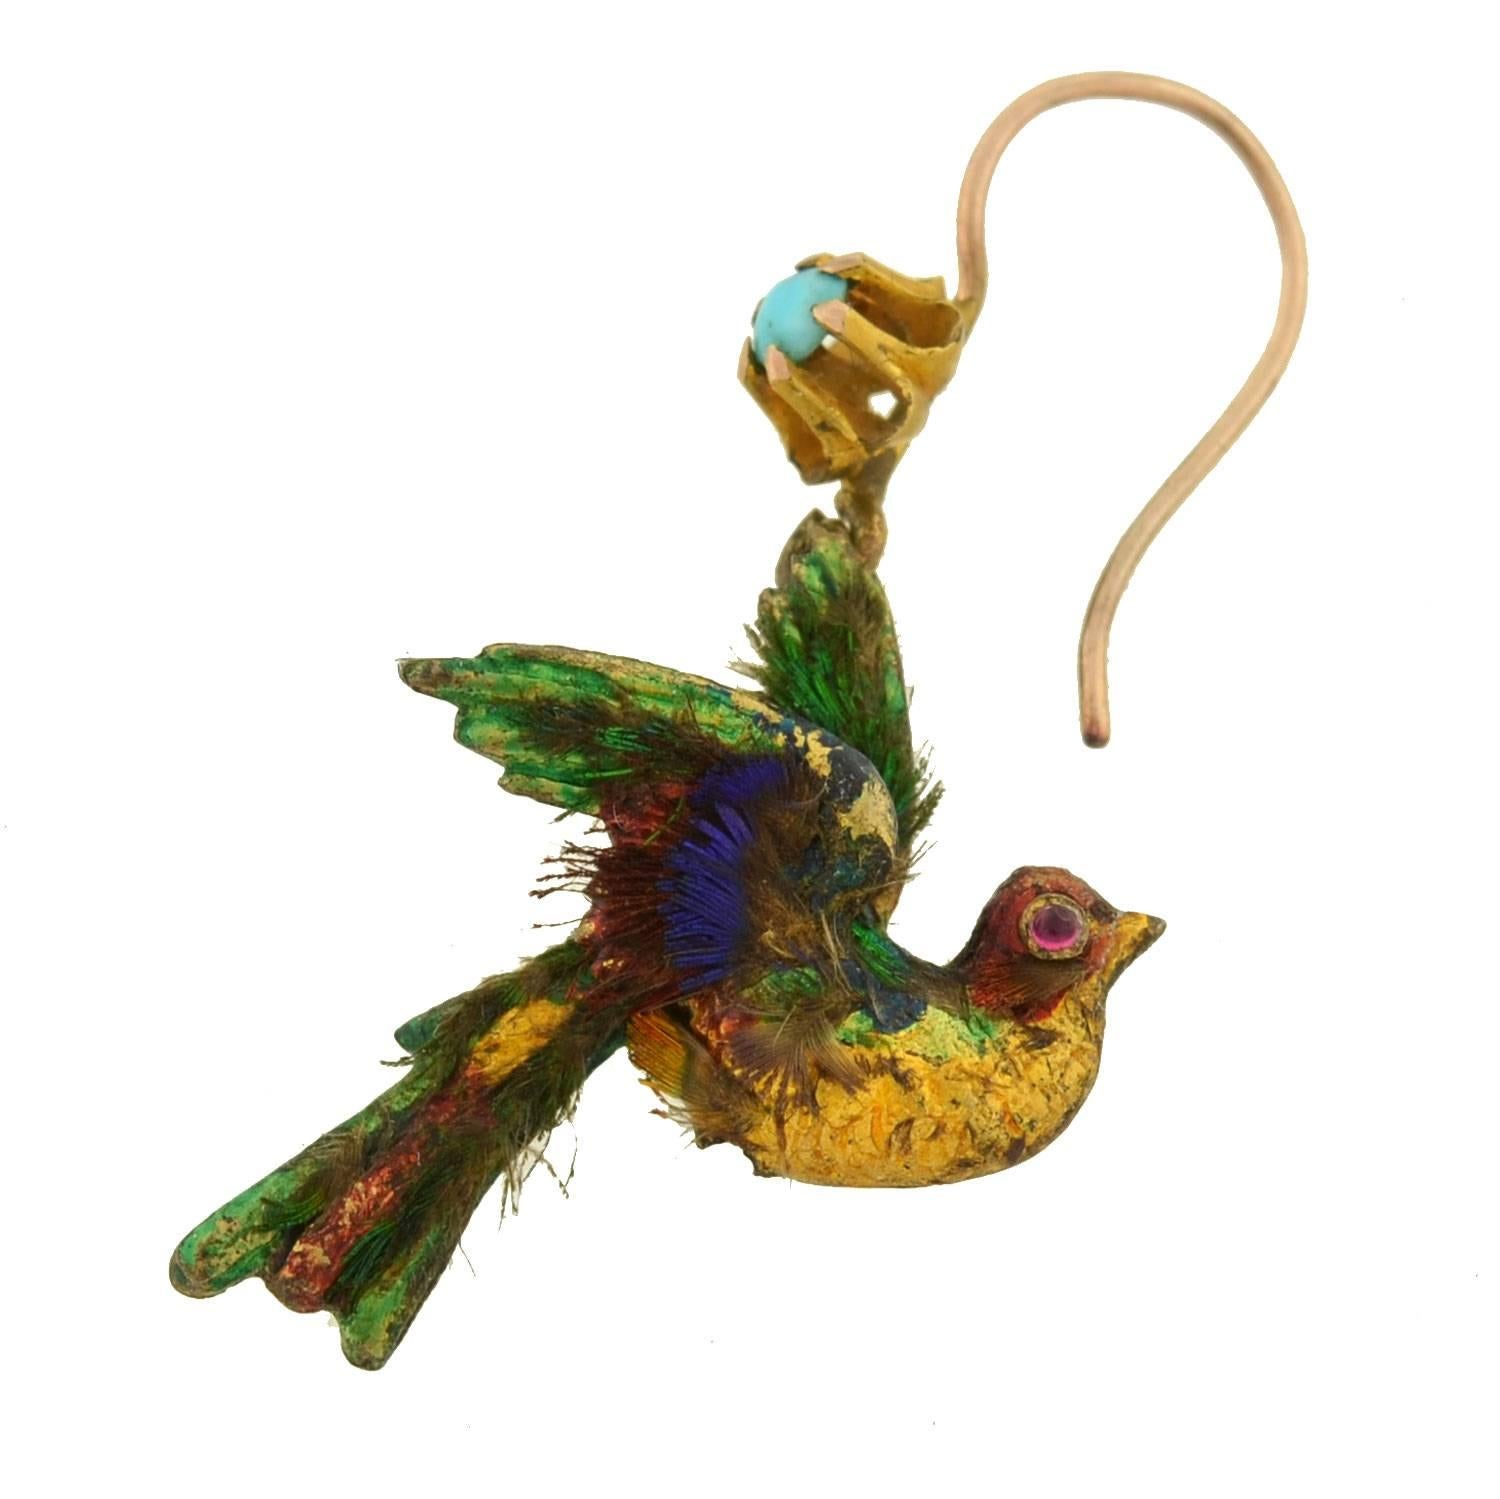 Ein extrem seltenes und ungewöhnliches Paar englischer Ohrringe aus der viktorianischen Ära (ca. 1880)! Jeder dieser kunstvollen Ohrringe ist aus 15kt Gelbgold gefertigt und trägt die Form eines exotischen Vogels. Die Vögel haben ein 3-dimensionales